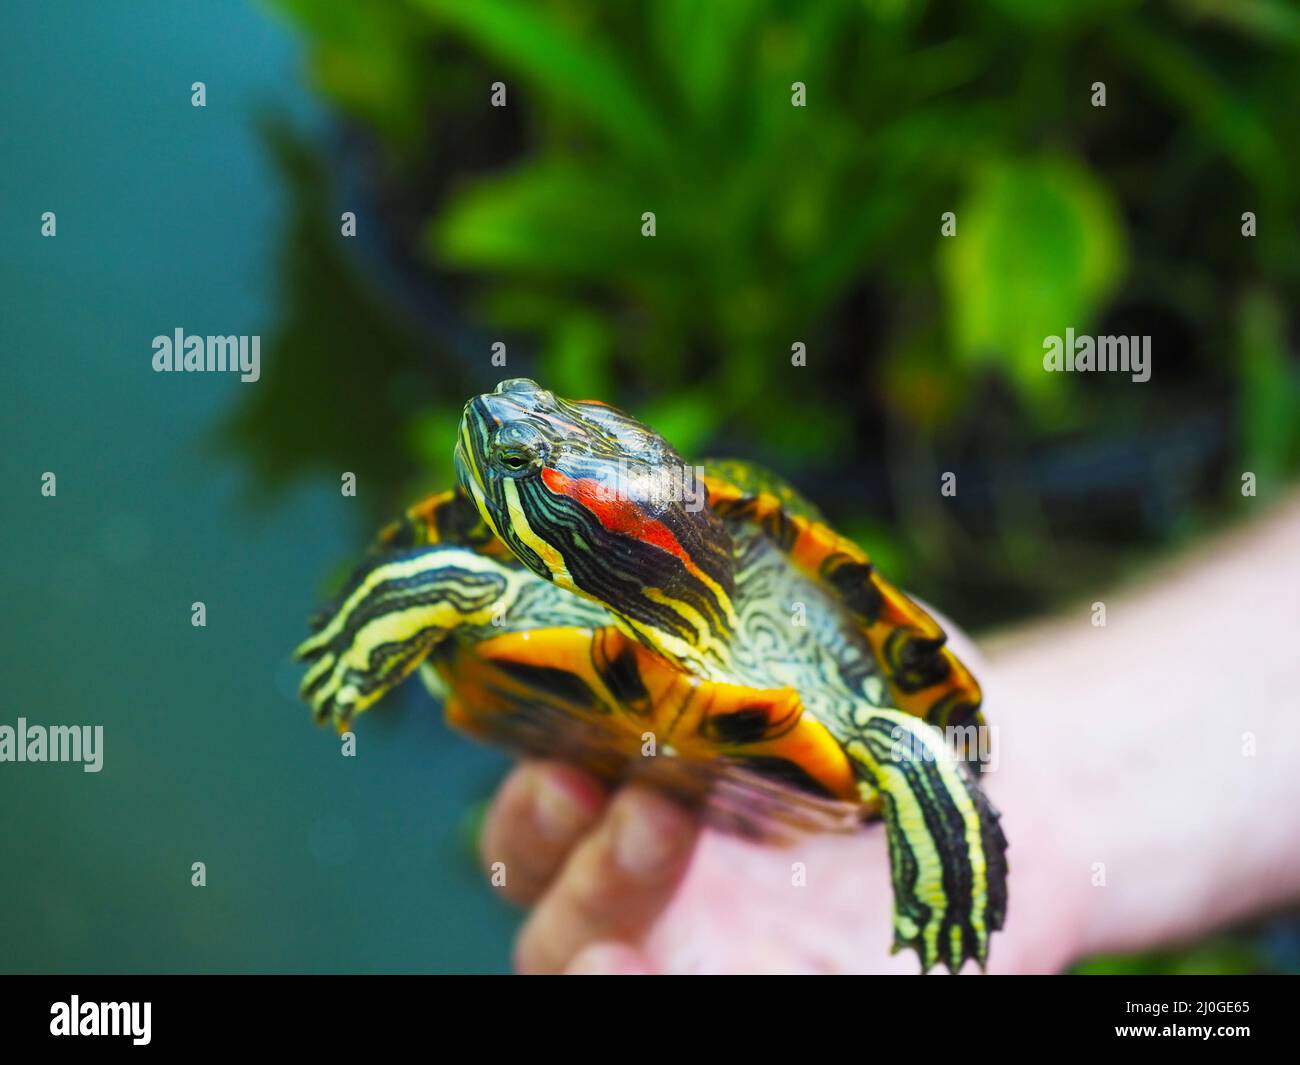 Gestreifte, gelb-grüne Rothaarschildkröte in menschlicher Hand im Freien. Nahaufnahme Stockfoto